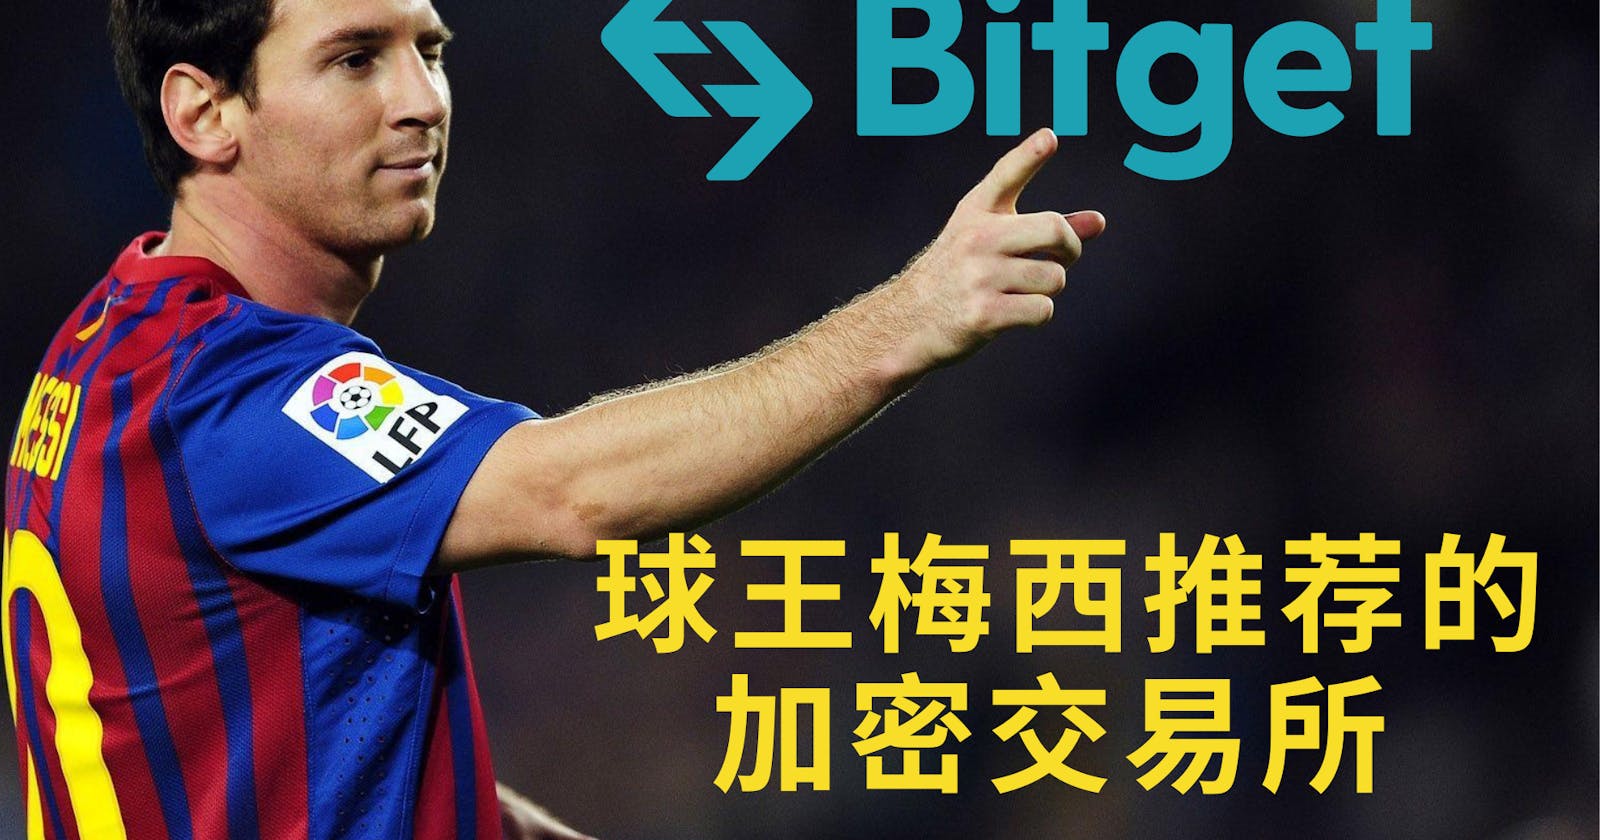 球王梅西推荐的加密产品: Bitget 交易所